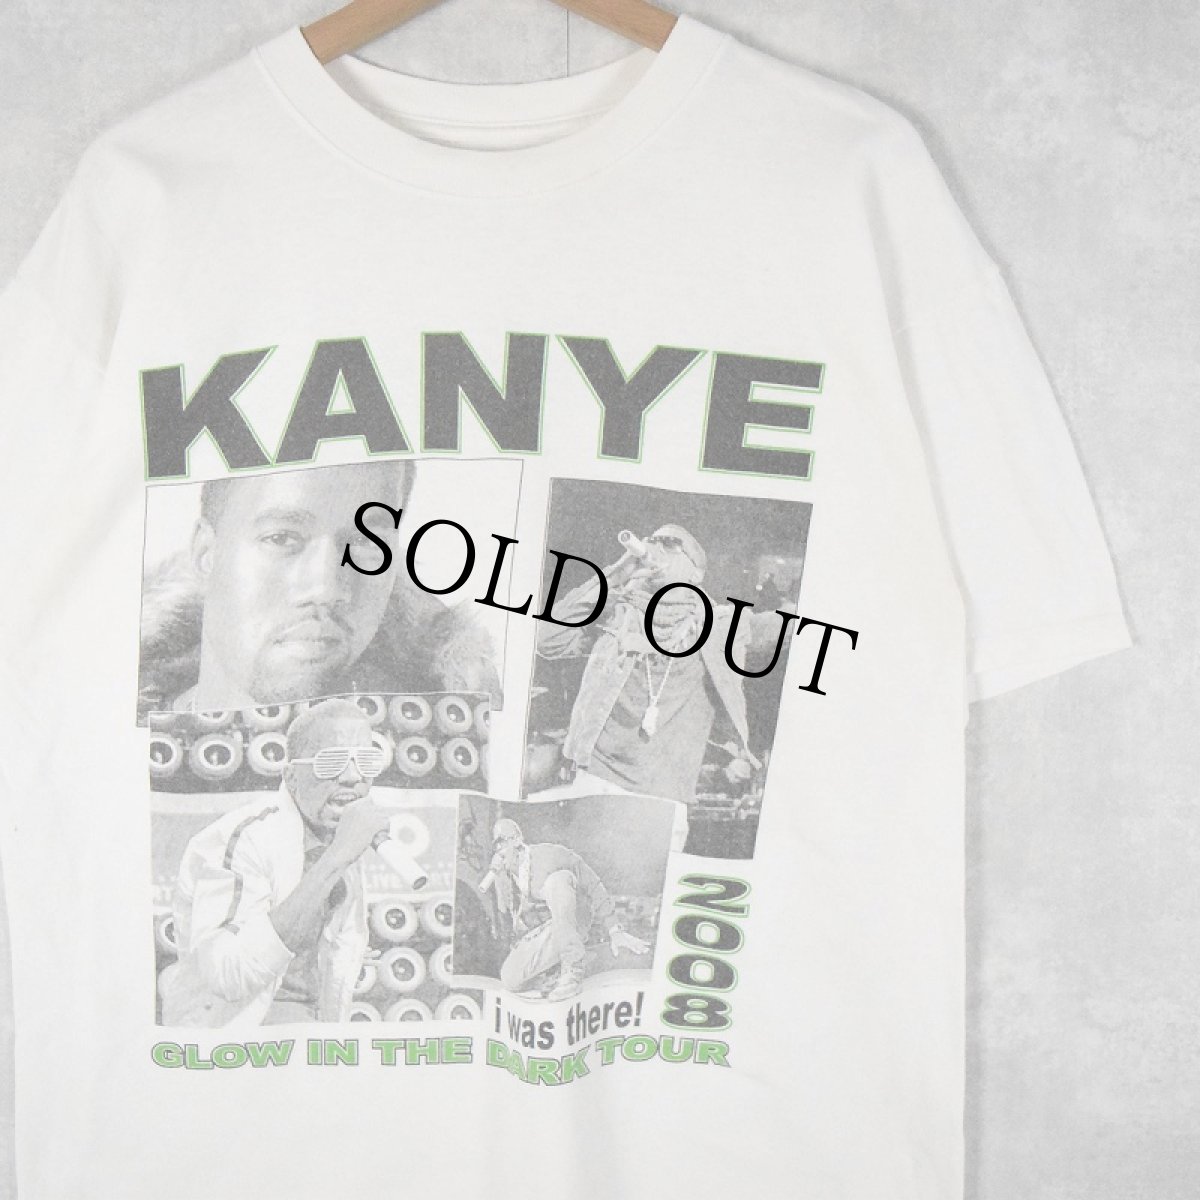 画像1: Kanye West GLOW IN THE DARK TOUR ヒップホップTシャツ (1)